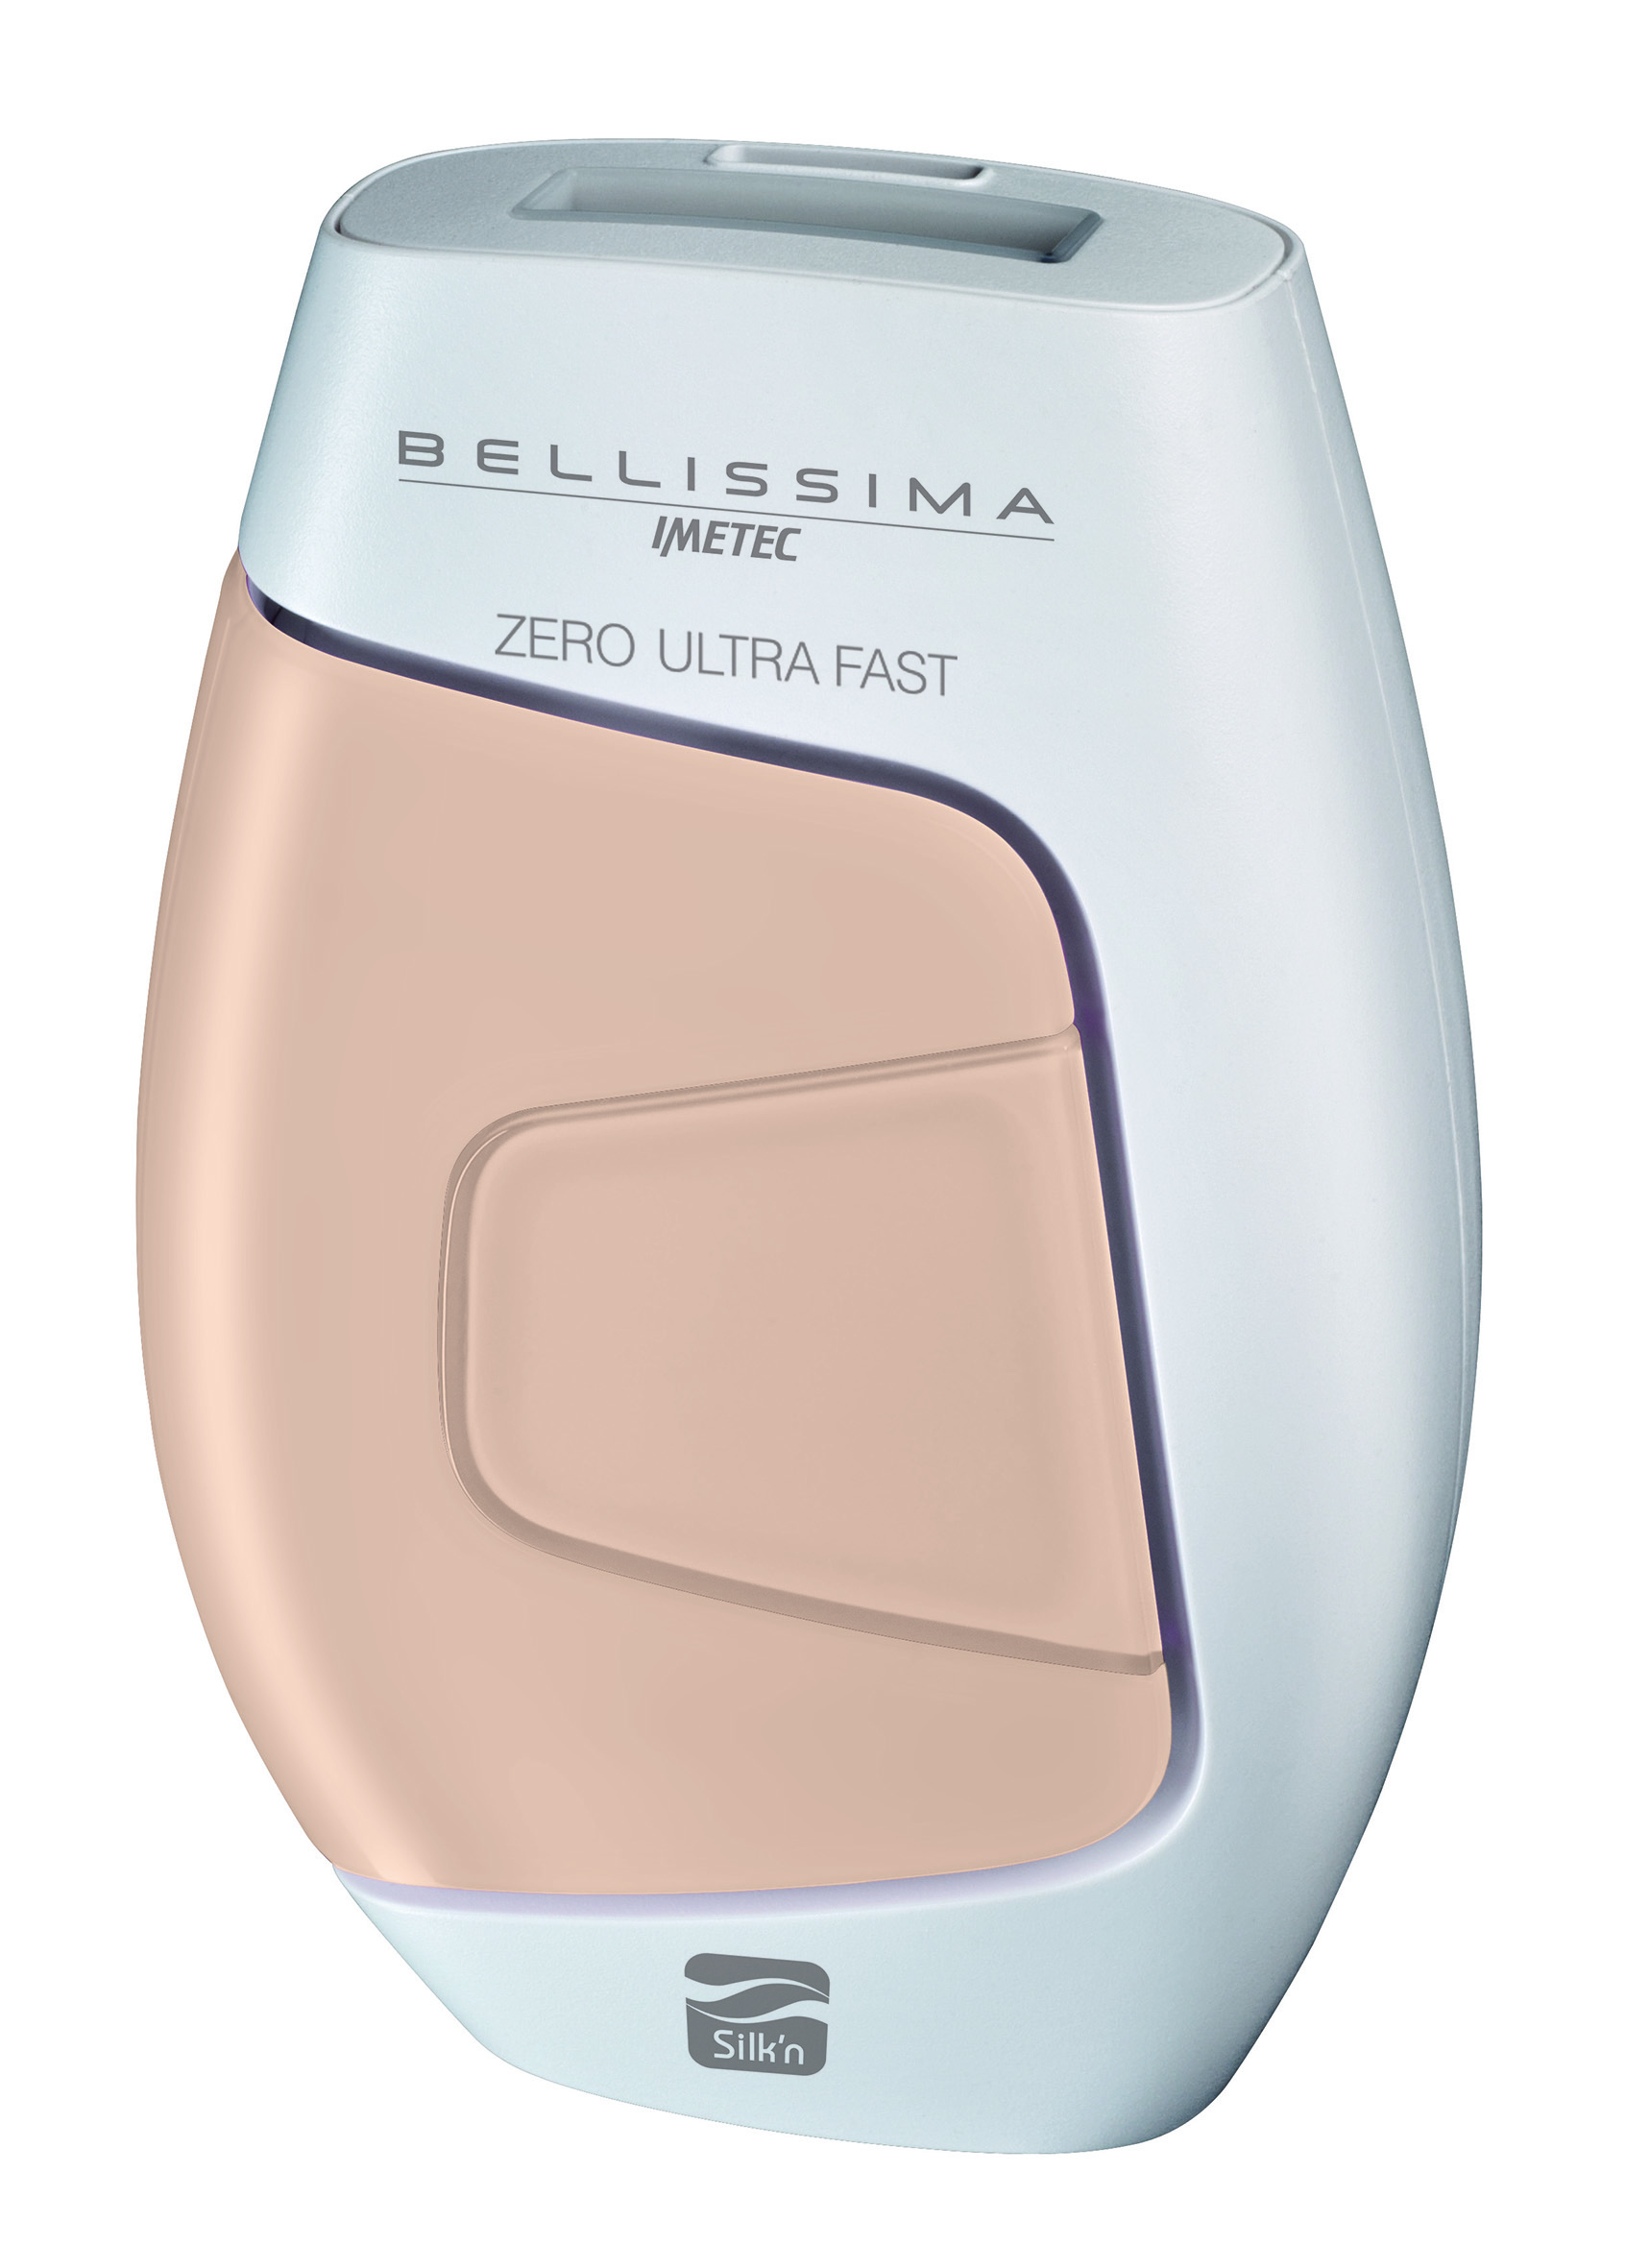 Bellissima Zero Ultra Fast by Imetec